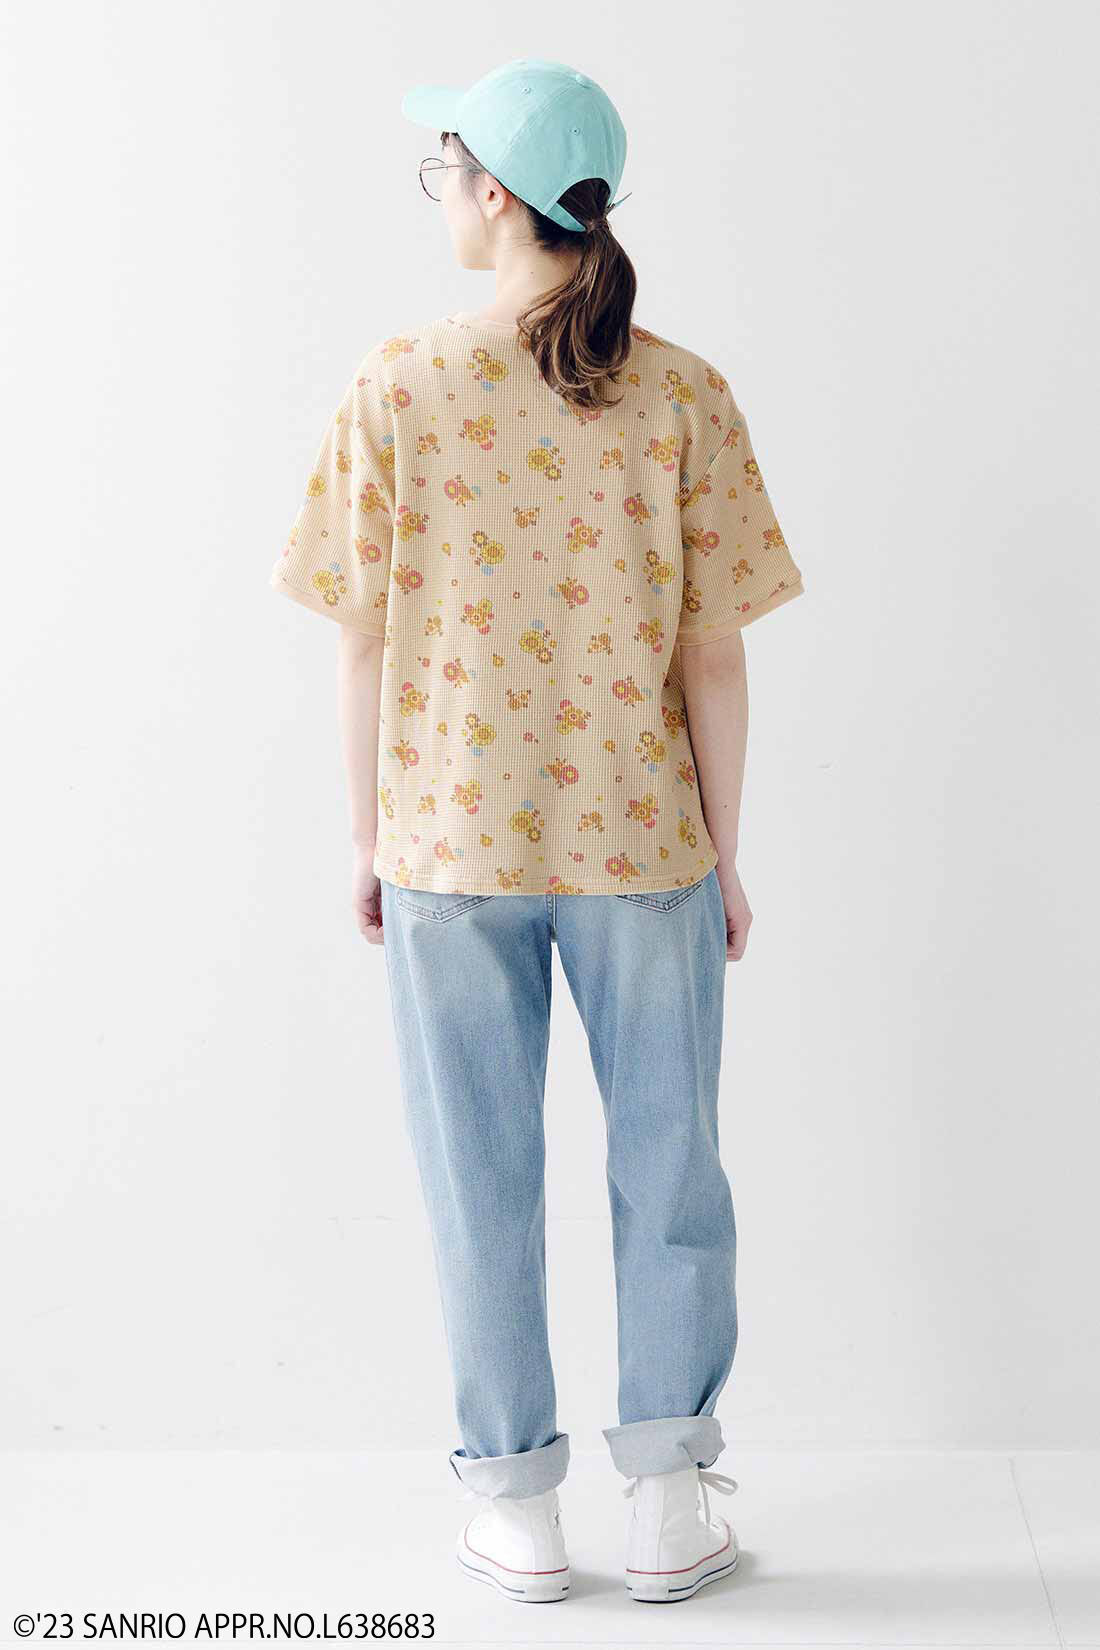 シロップ．|サンリオキャラクターコラボ お花模様のコットンワッフルTシャツ〈ゴロピカドン〉|身長162cm、Mサイズ着用